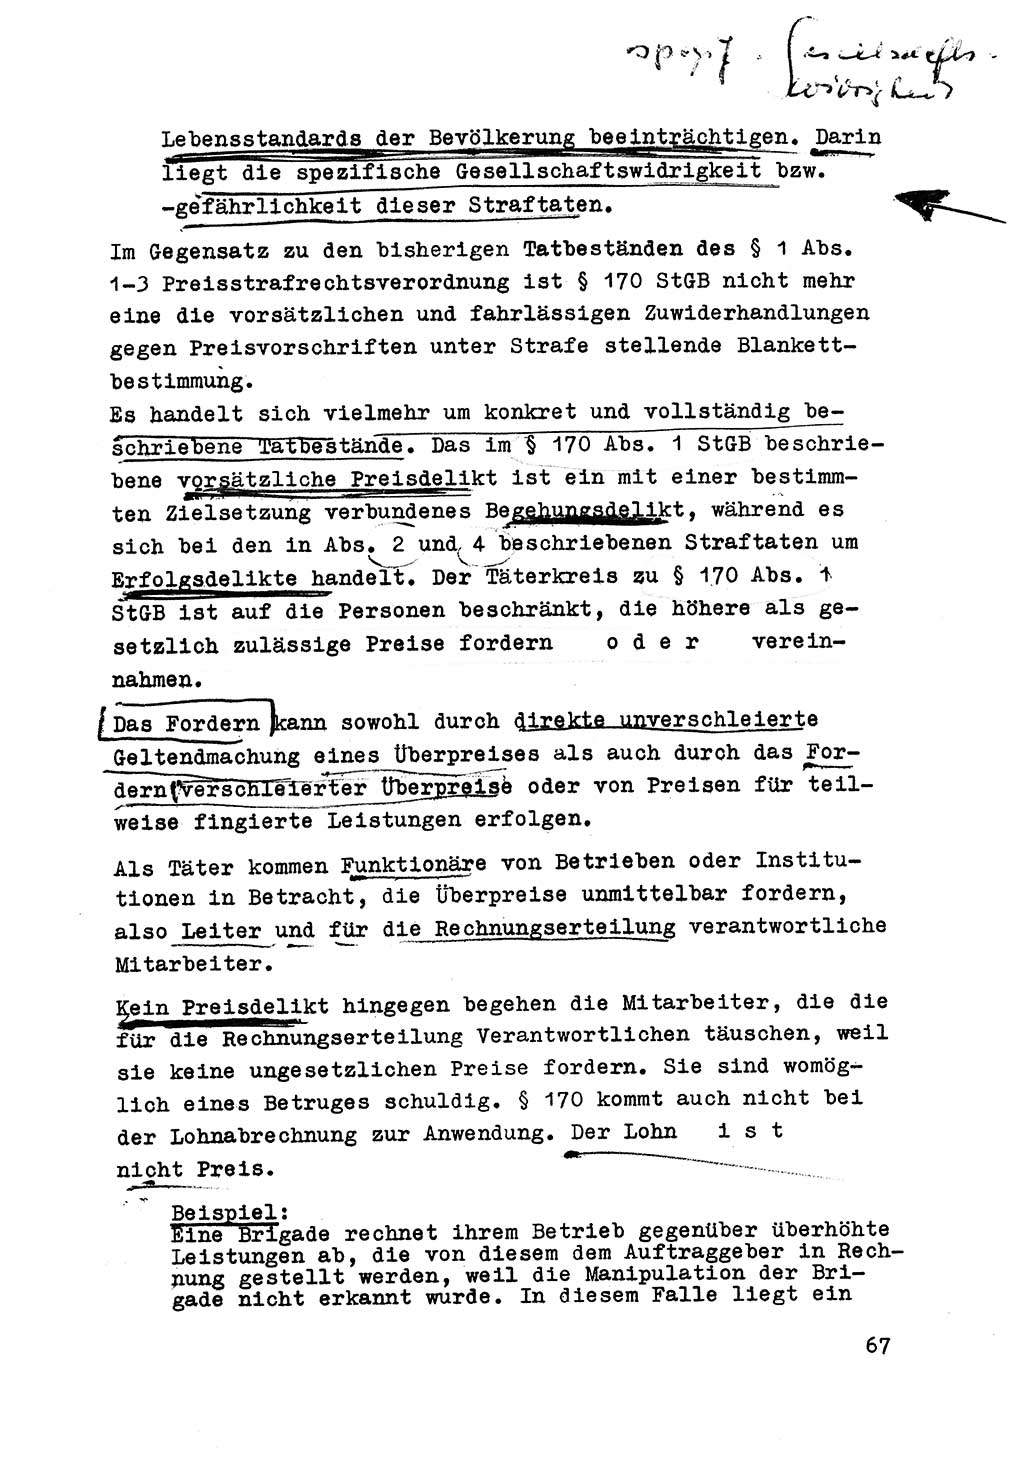 Strafrecht der DDR (Deutsche Demokratische Republik), Besonderer Teil, Lehrmaterial, Heft 6 1970, Seite 67 (Strafr. DDR BT Lehrmat. H. 6 1970, S. 67)